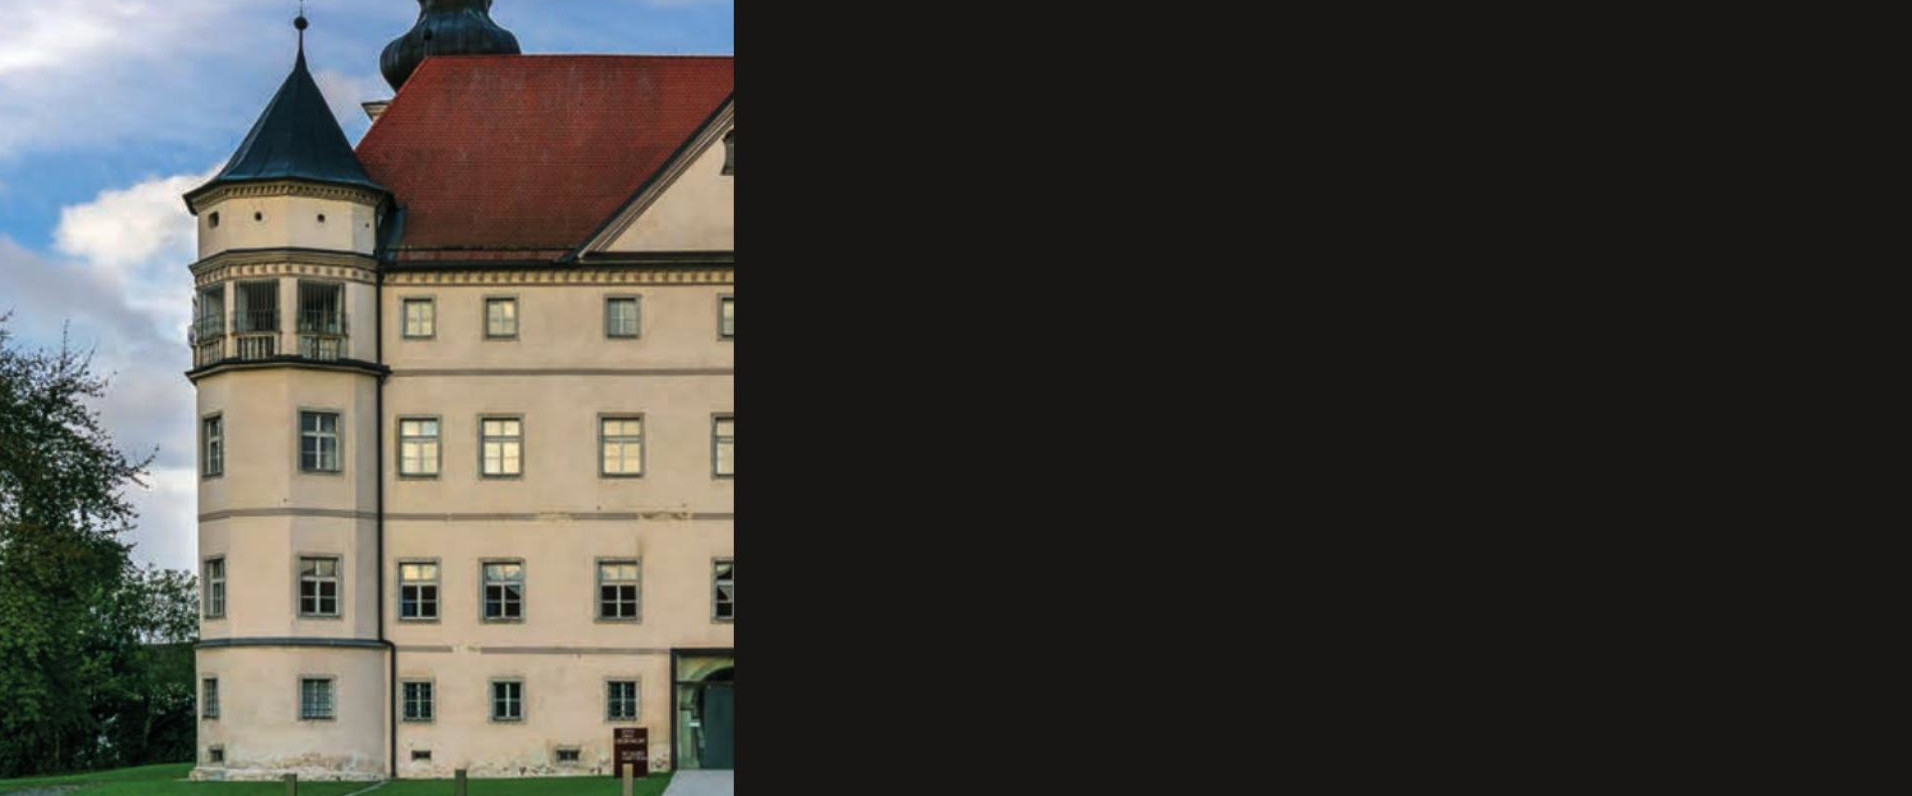 20 Jahre Lern- und Gedenkort Schloss Hartheim